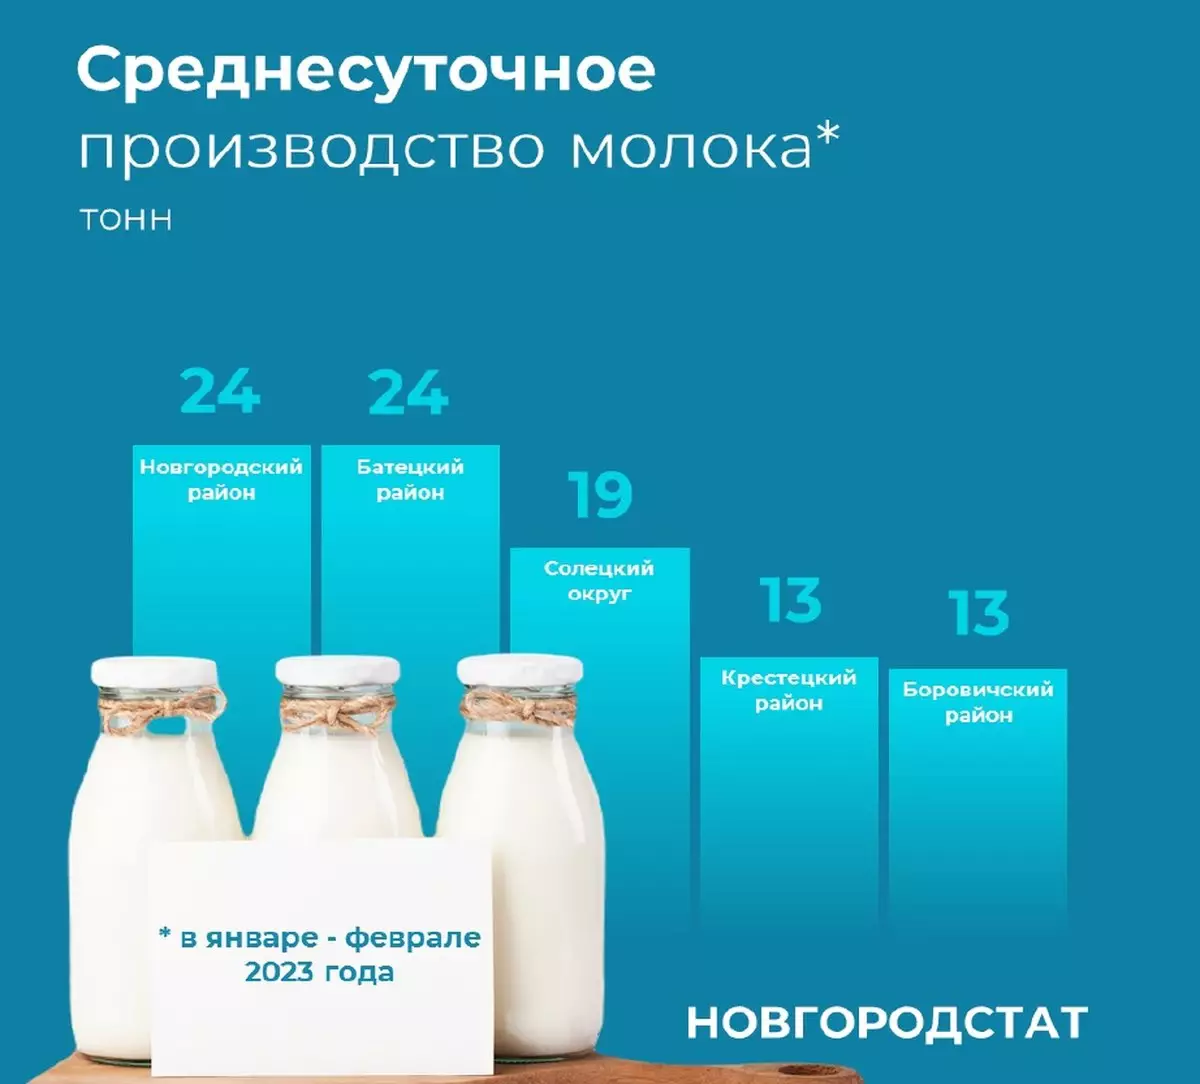 Увеличение производства молока связано с ростом молочной продуктивности коров.